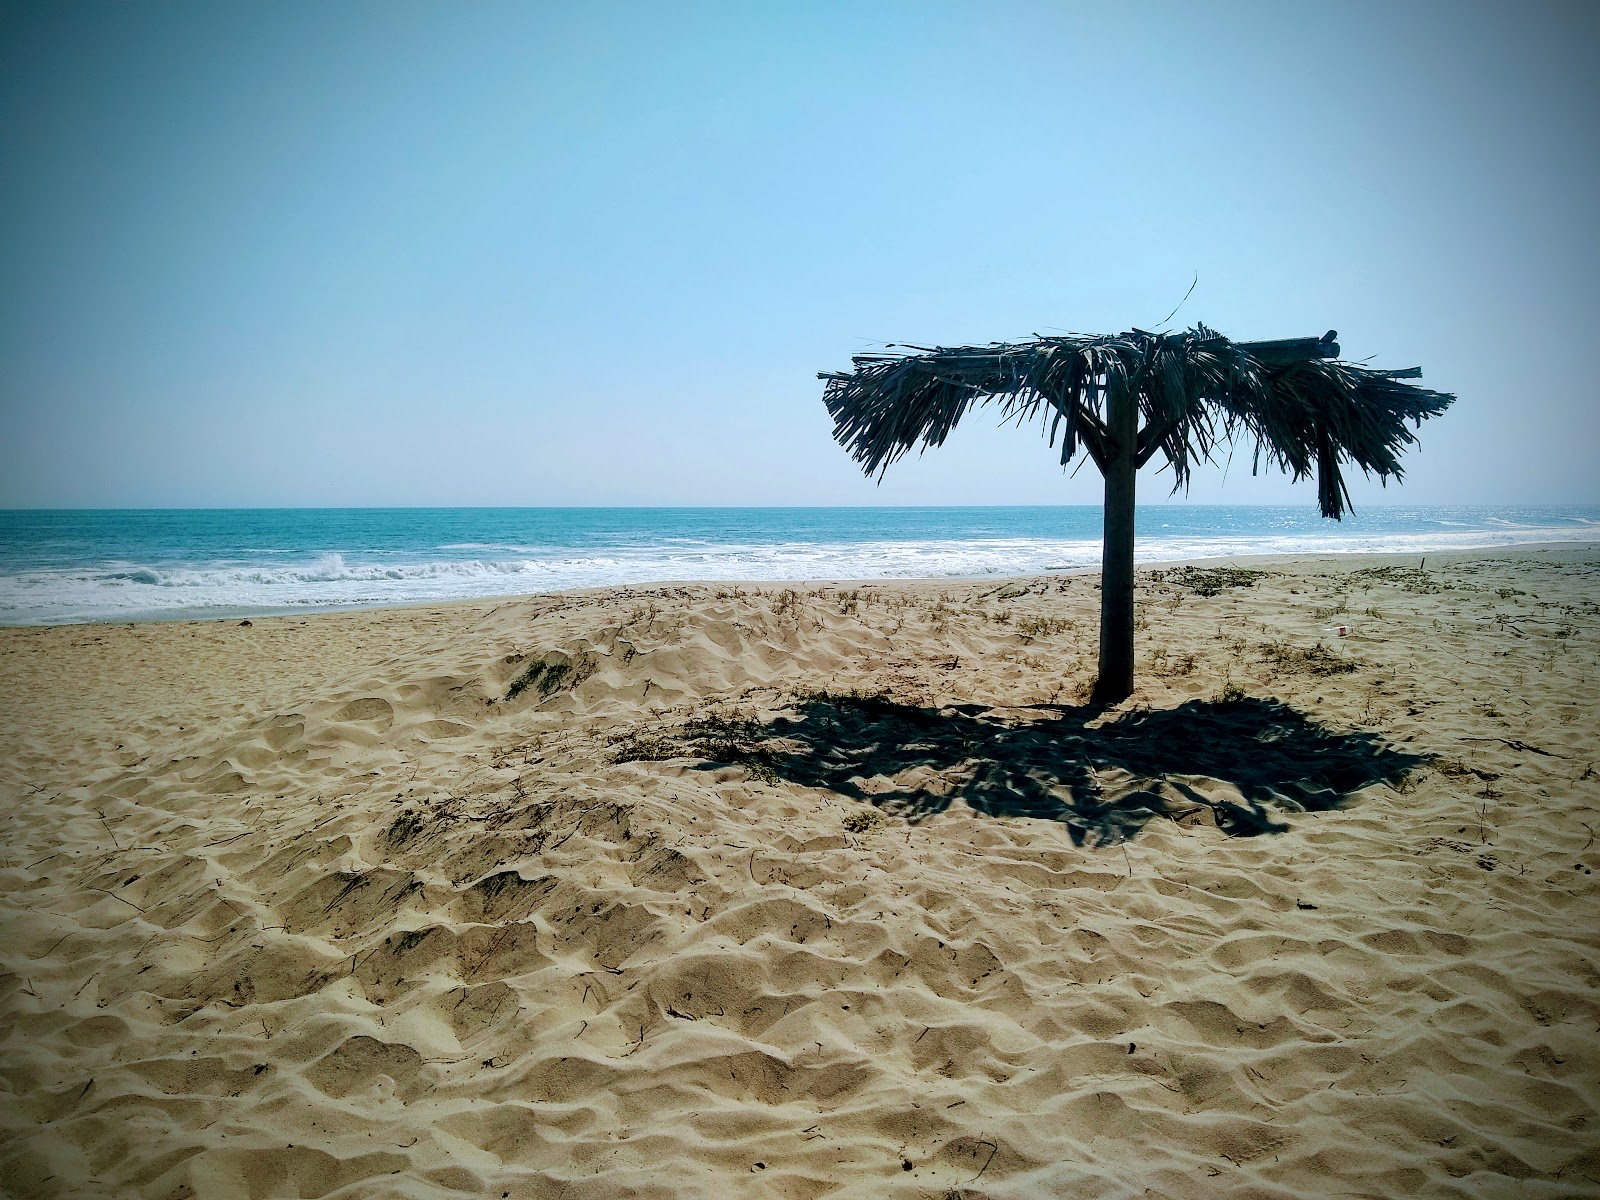 Playa El Carrizal'in fotoğrafı parlak kum yüzey ile